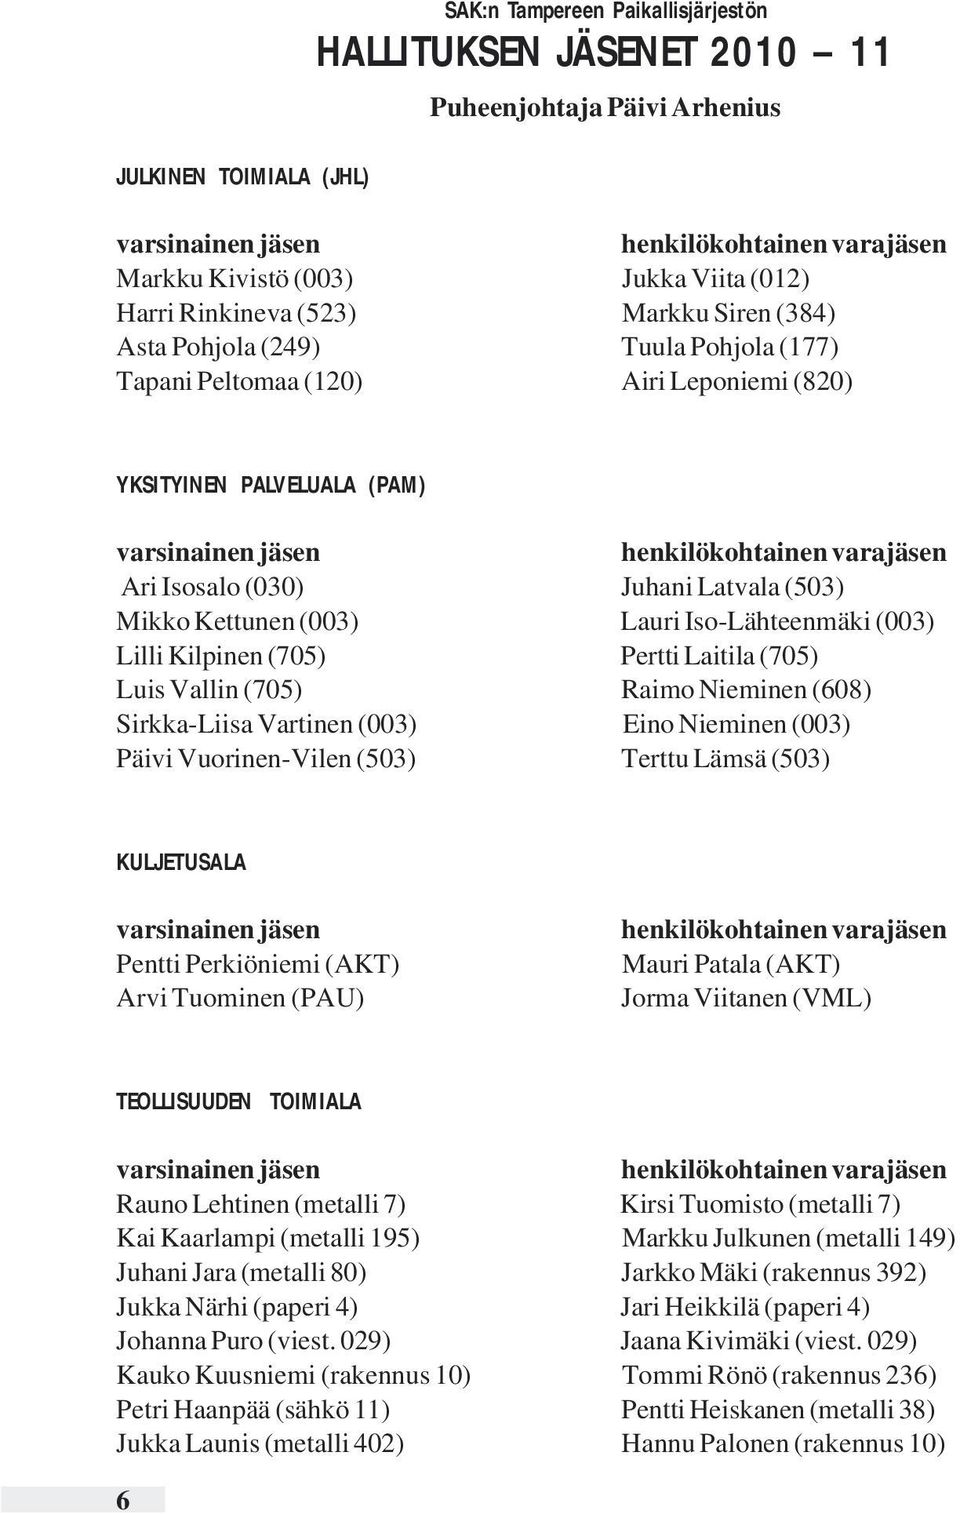 Isosalo (030) Juhani Latvala (503) Mikko Kettunen (003) Lauri Iso-Lähteenmäki (003) Lilli Kilpinen (705) Pertti Laitila (705) Luis Vallin (705) Raimo Nieminen (608) Sirkka-Liisa Vartinen (003) Eino